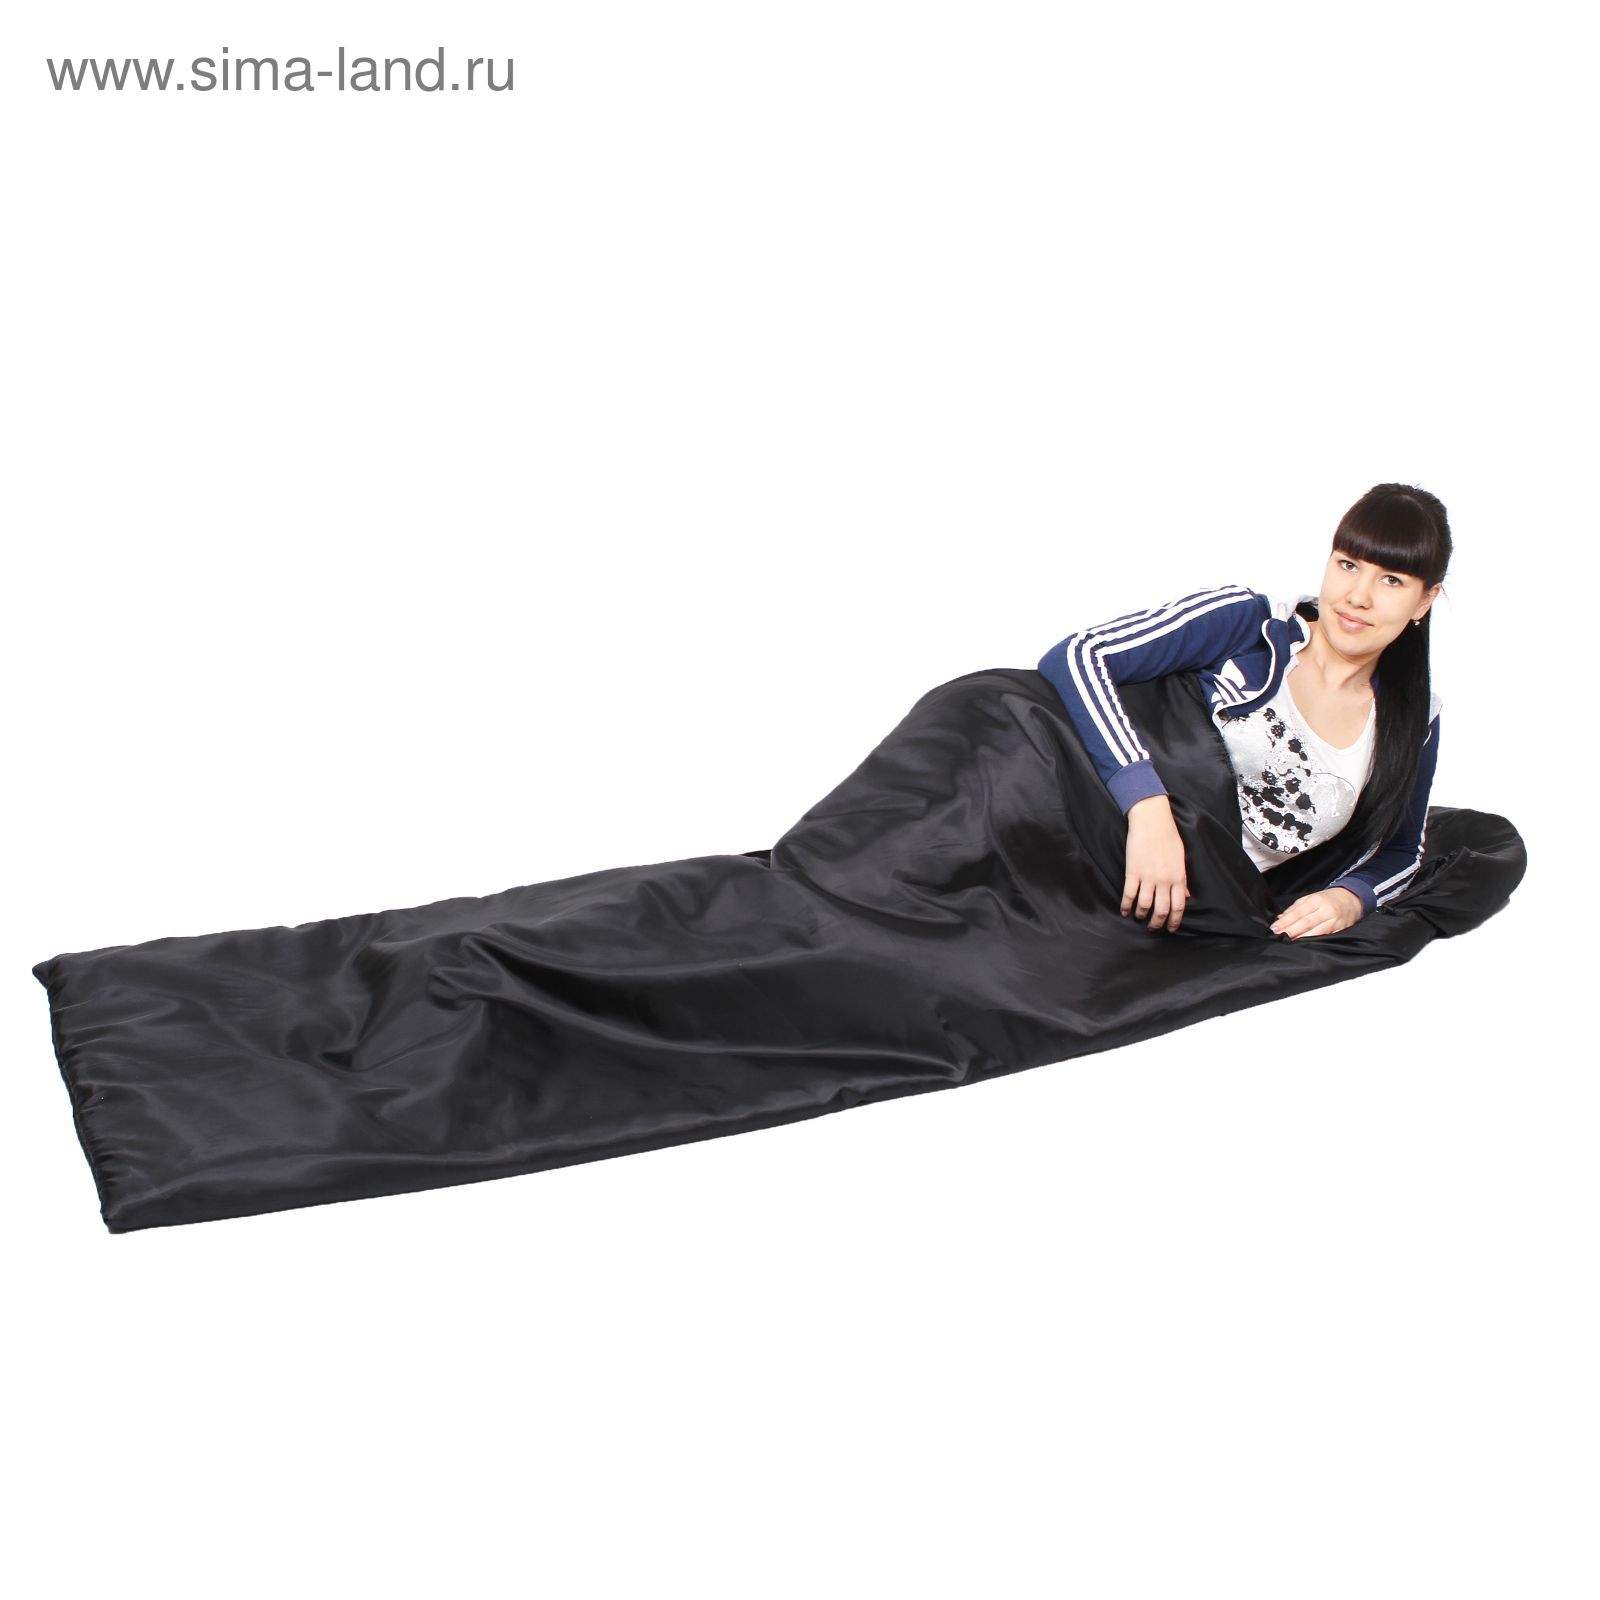 Спальный мешок-кокон "Эконом", 1,5- слойный, размер 220 х 70 см